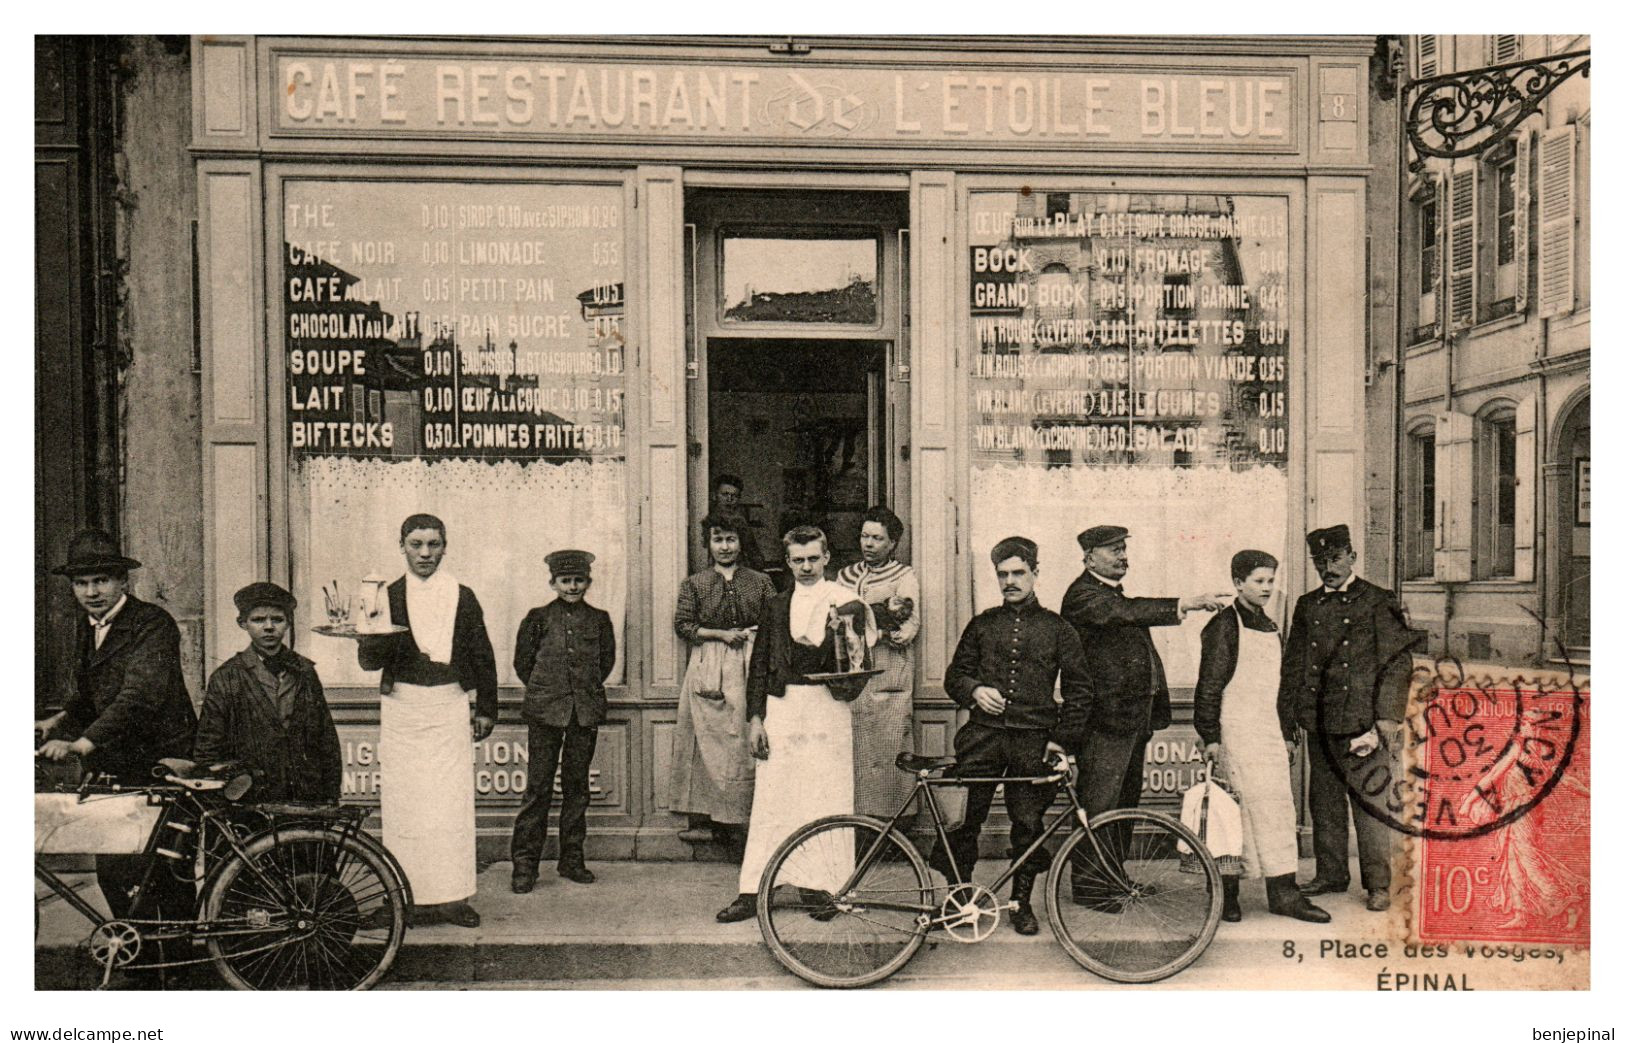 Epinal - Café Restaurant De L'Etoile Bleue - 8, Place Des Vosges - Epinal